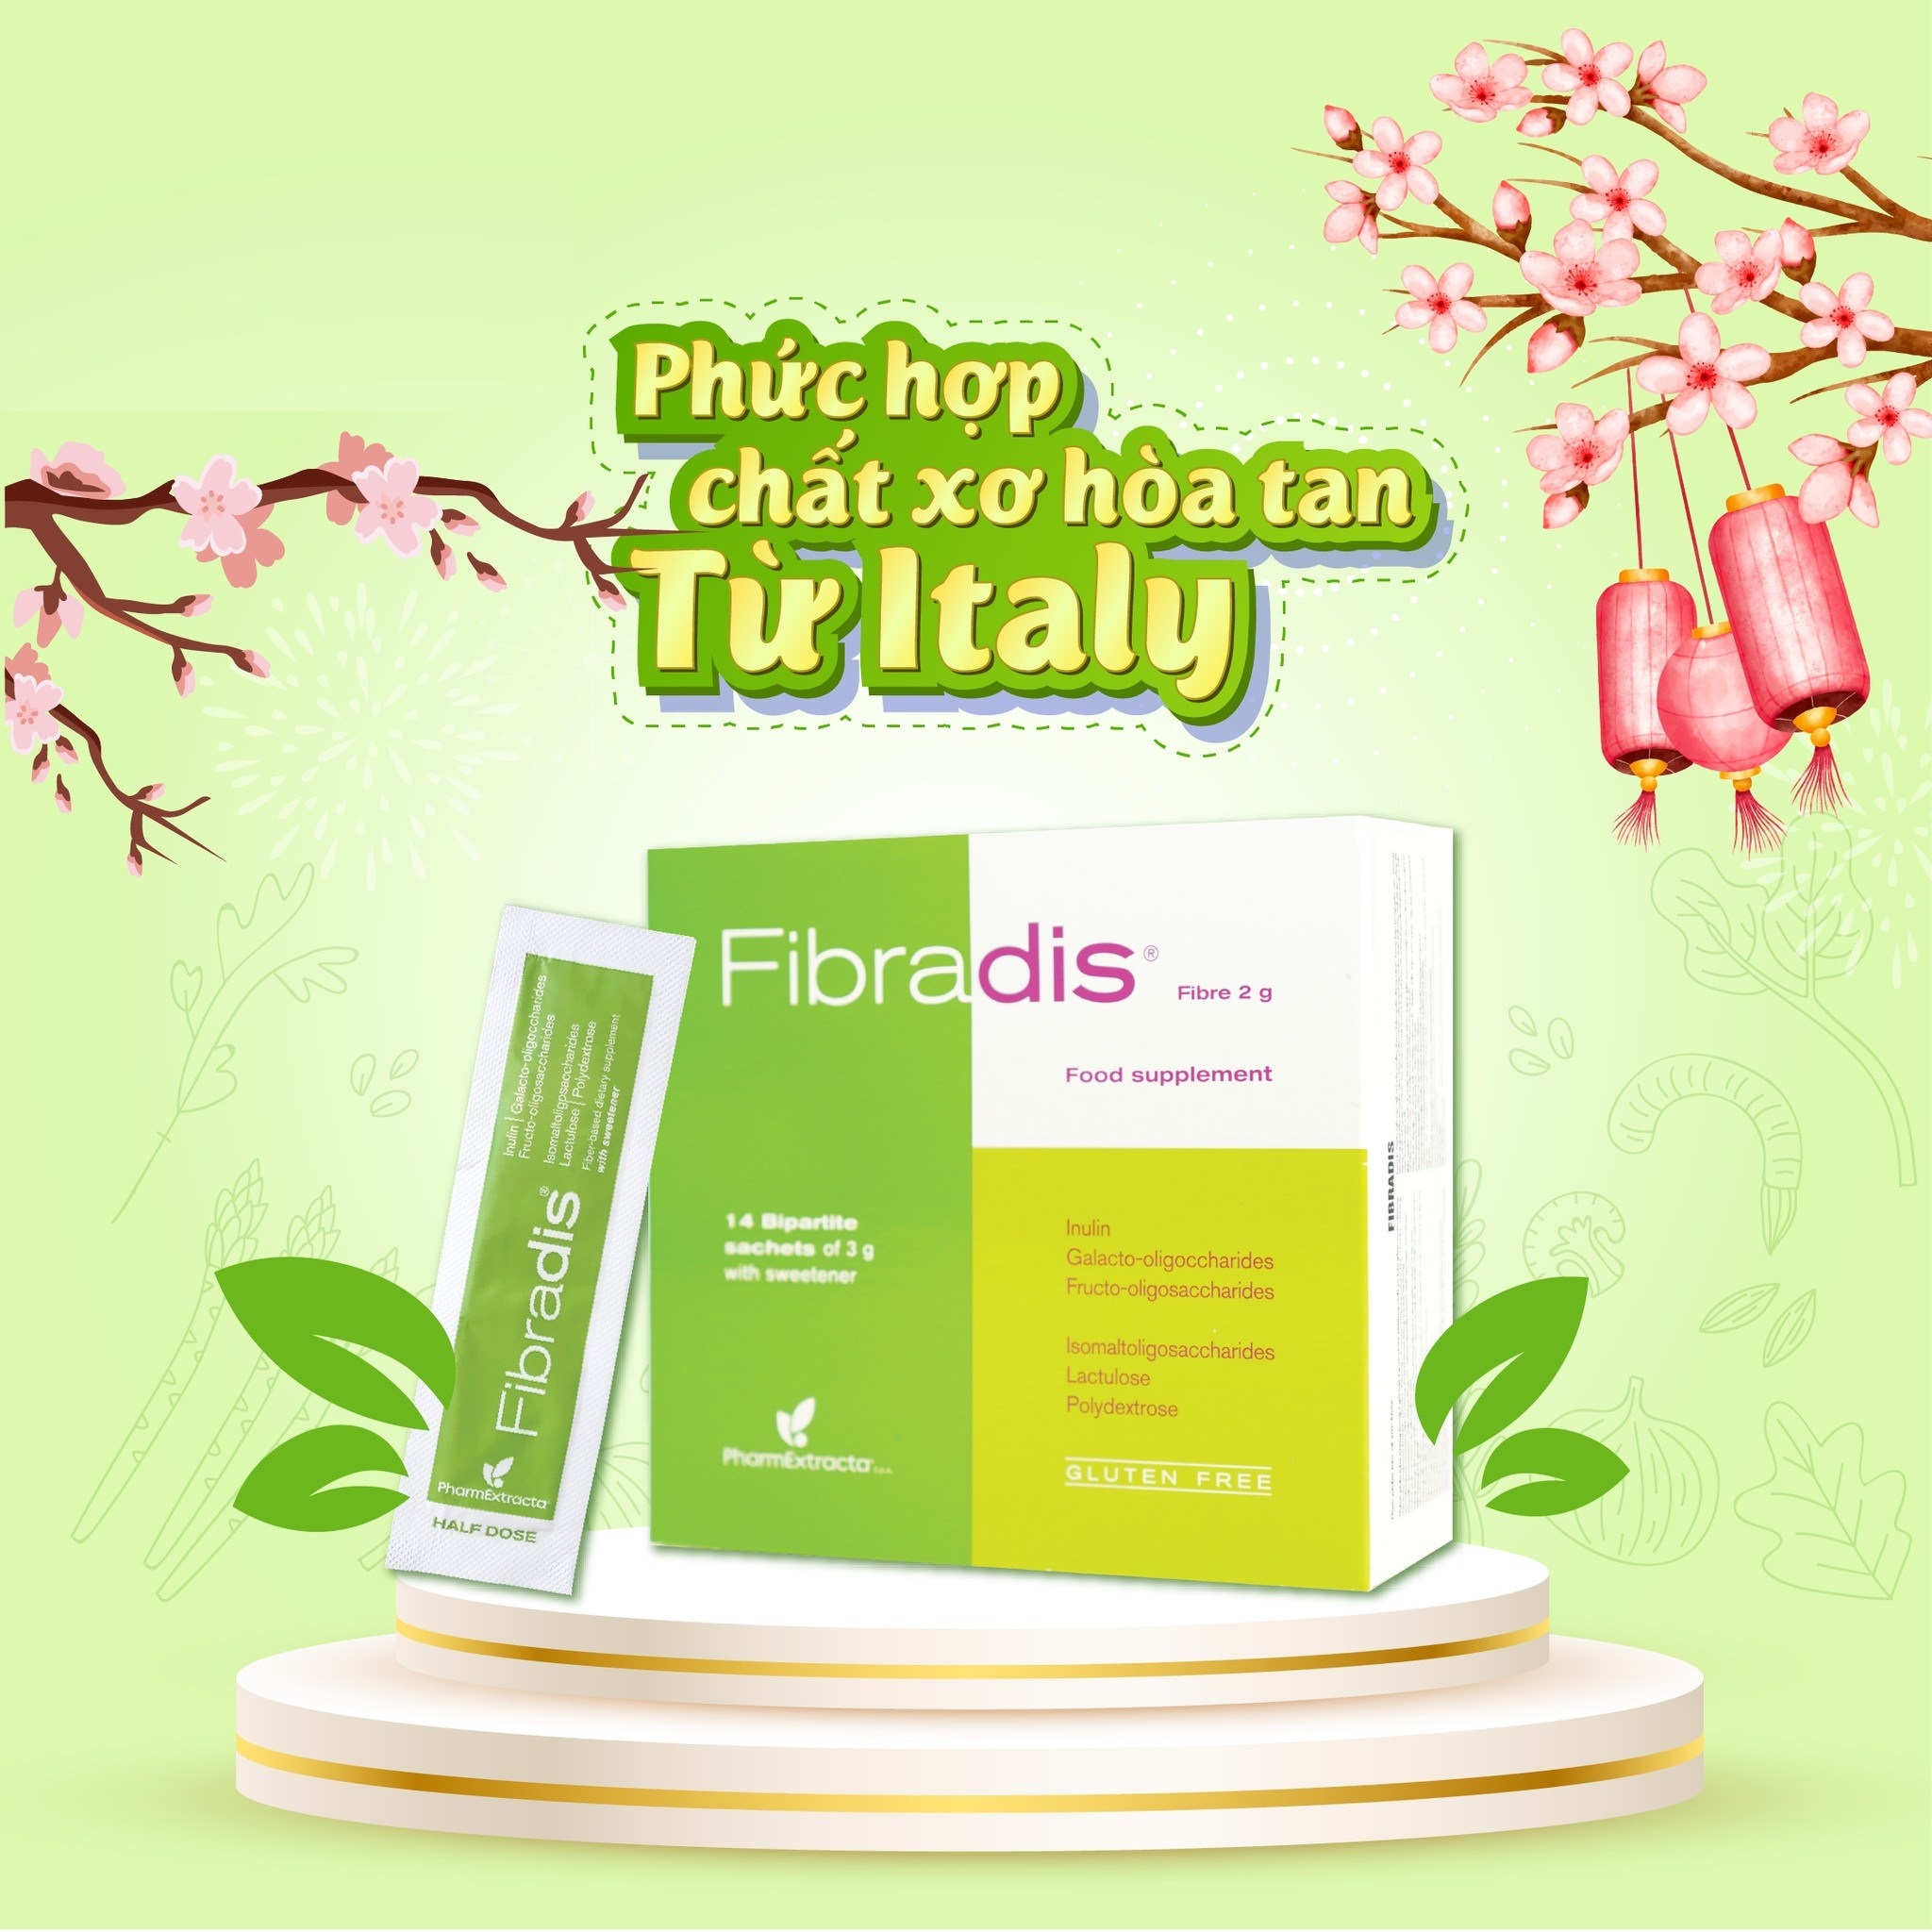 FIBRADIS – Chất Xơ Hòa Tan Nhập Khẩu Từ Ý - (Hộp 14 gói phân đôi x 3g) Bổ sung chất xơ, hỗ trợ tốt cho đường tiêu hóa, giúp giảm nguy cơ táo bón